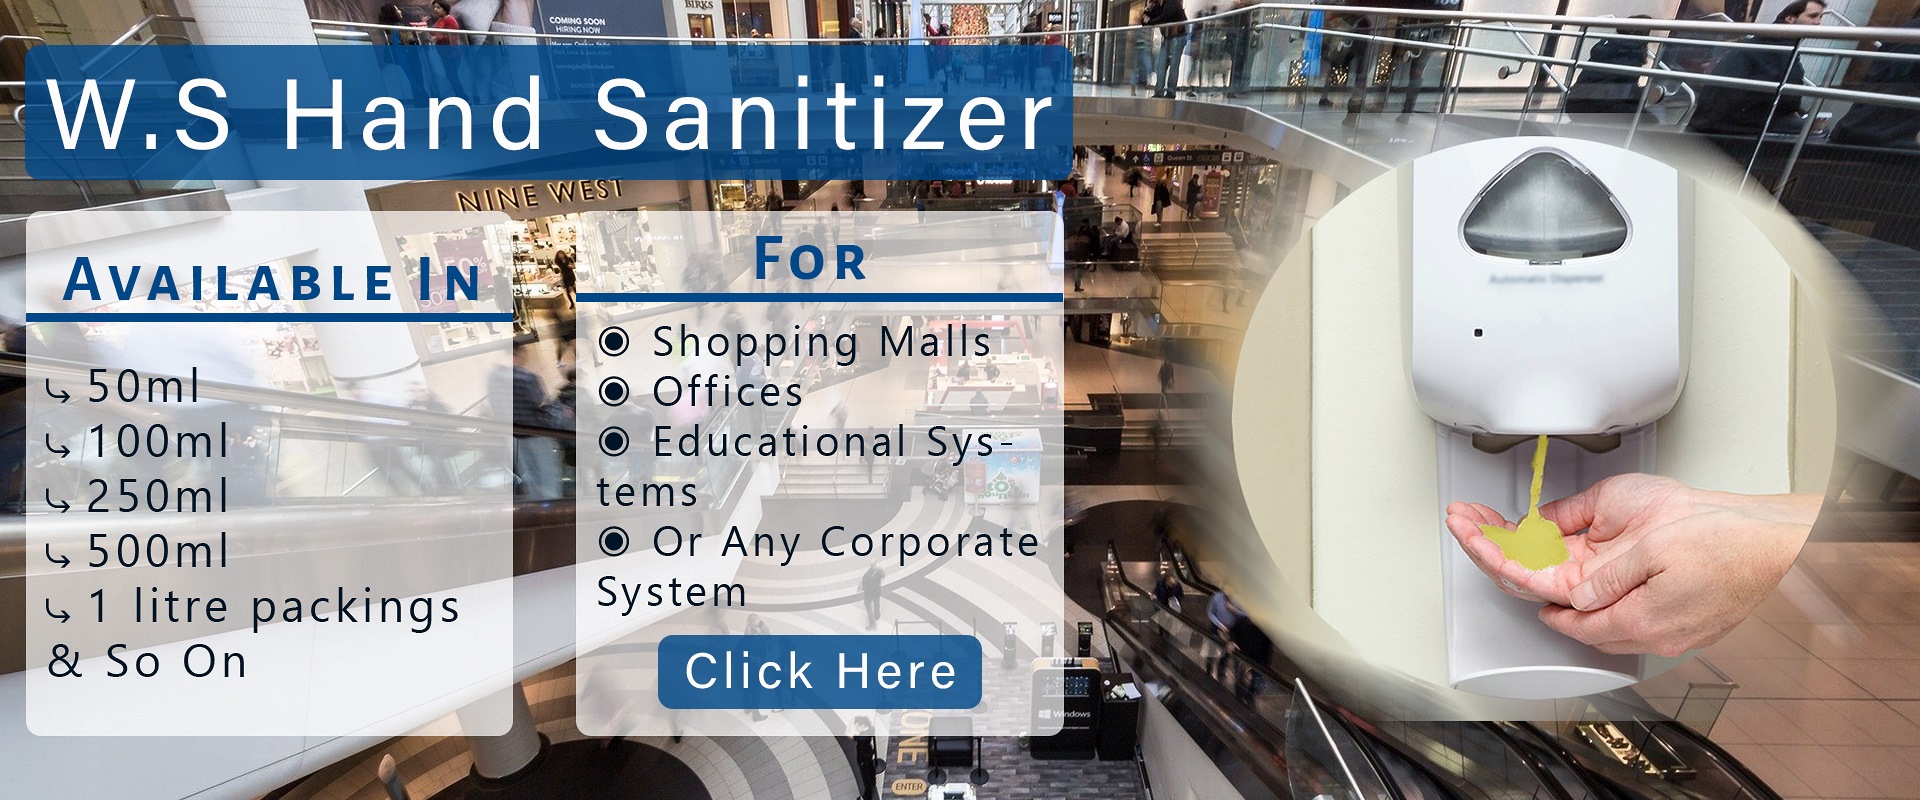 Sanitizer-5smart